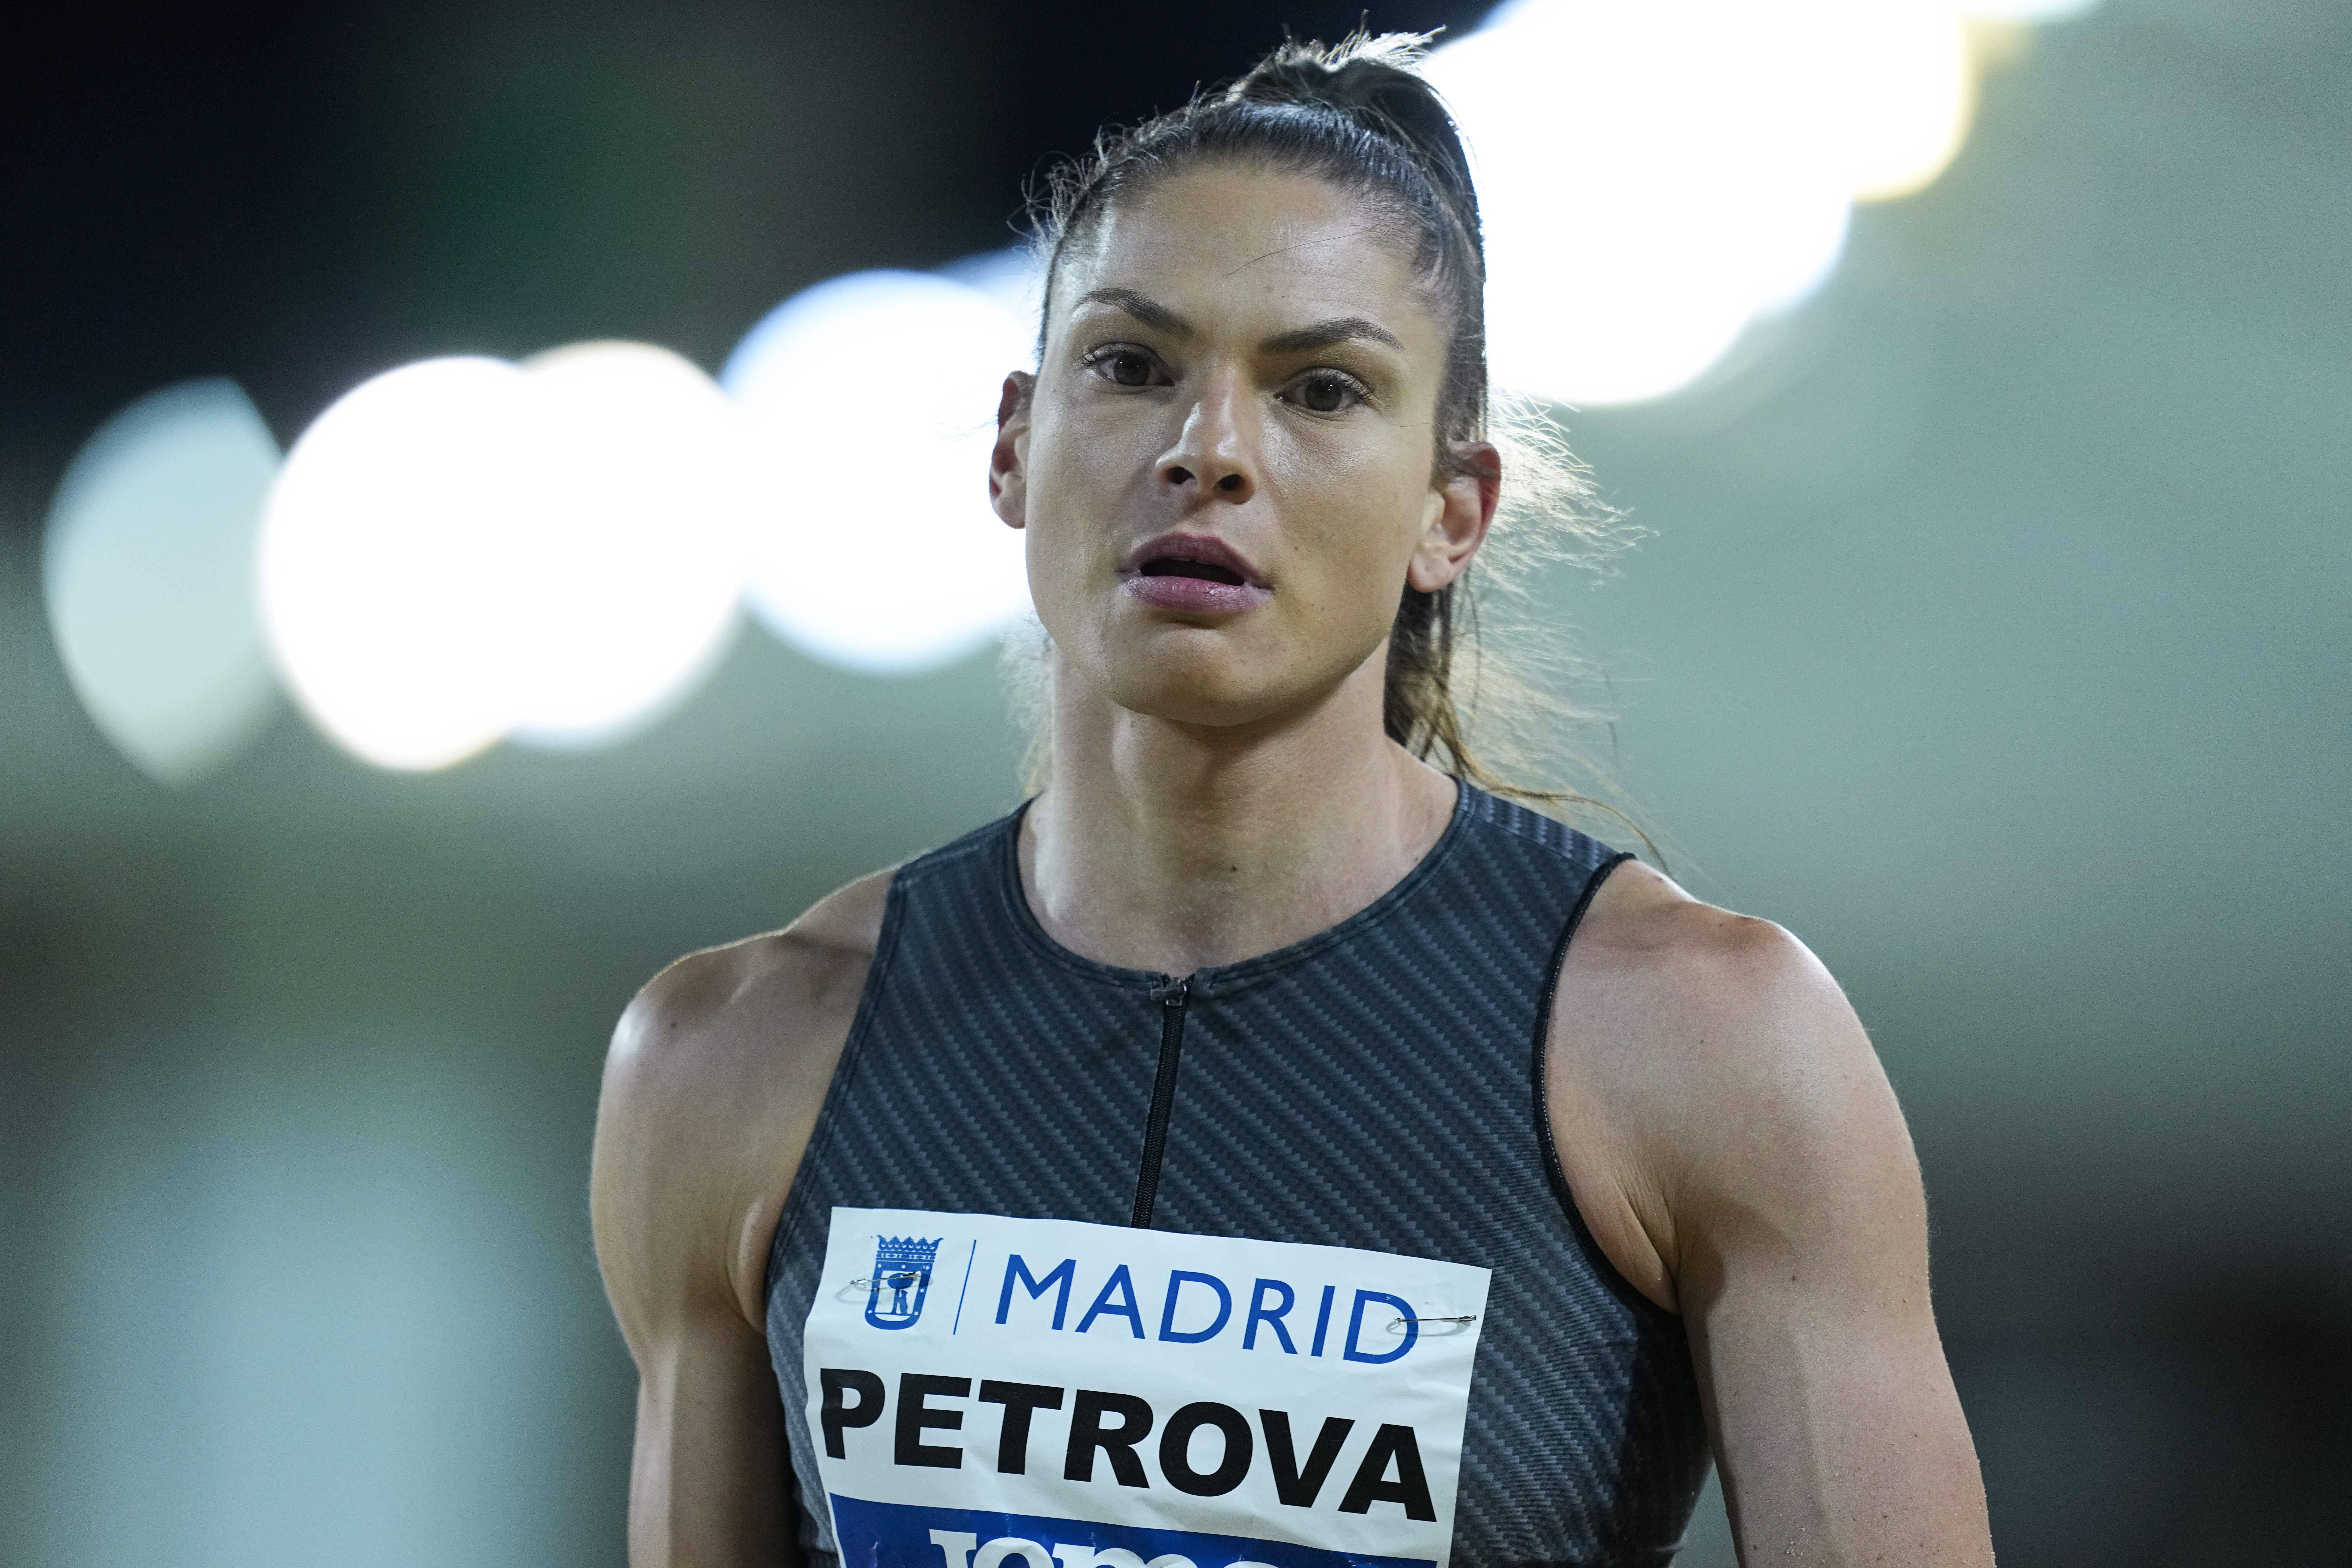 Габриела Петрова спечели титлата на България на троен скок